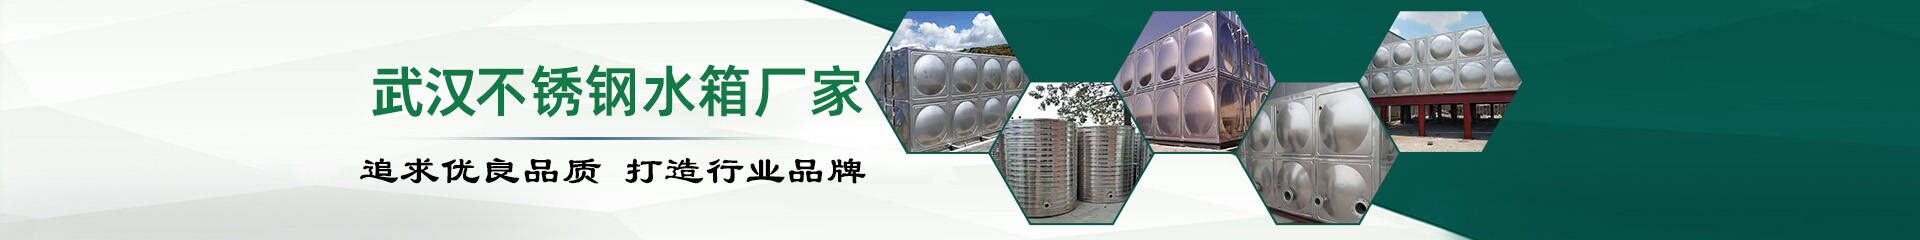 变频供水设备_变频恒压供水设备_武汉不锈钢水箱厂家联系方式